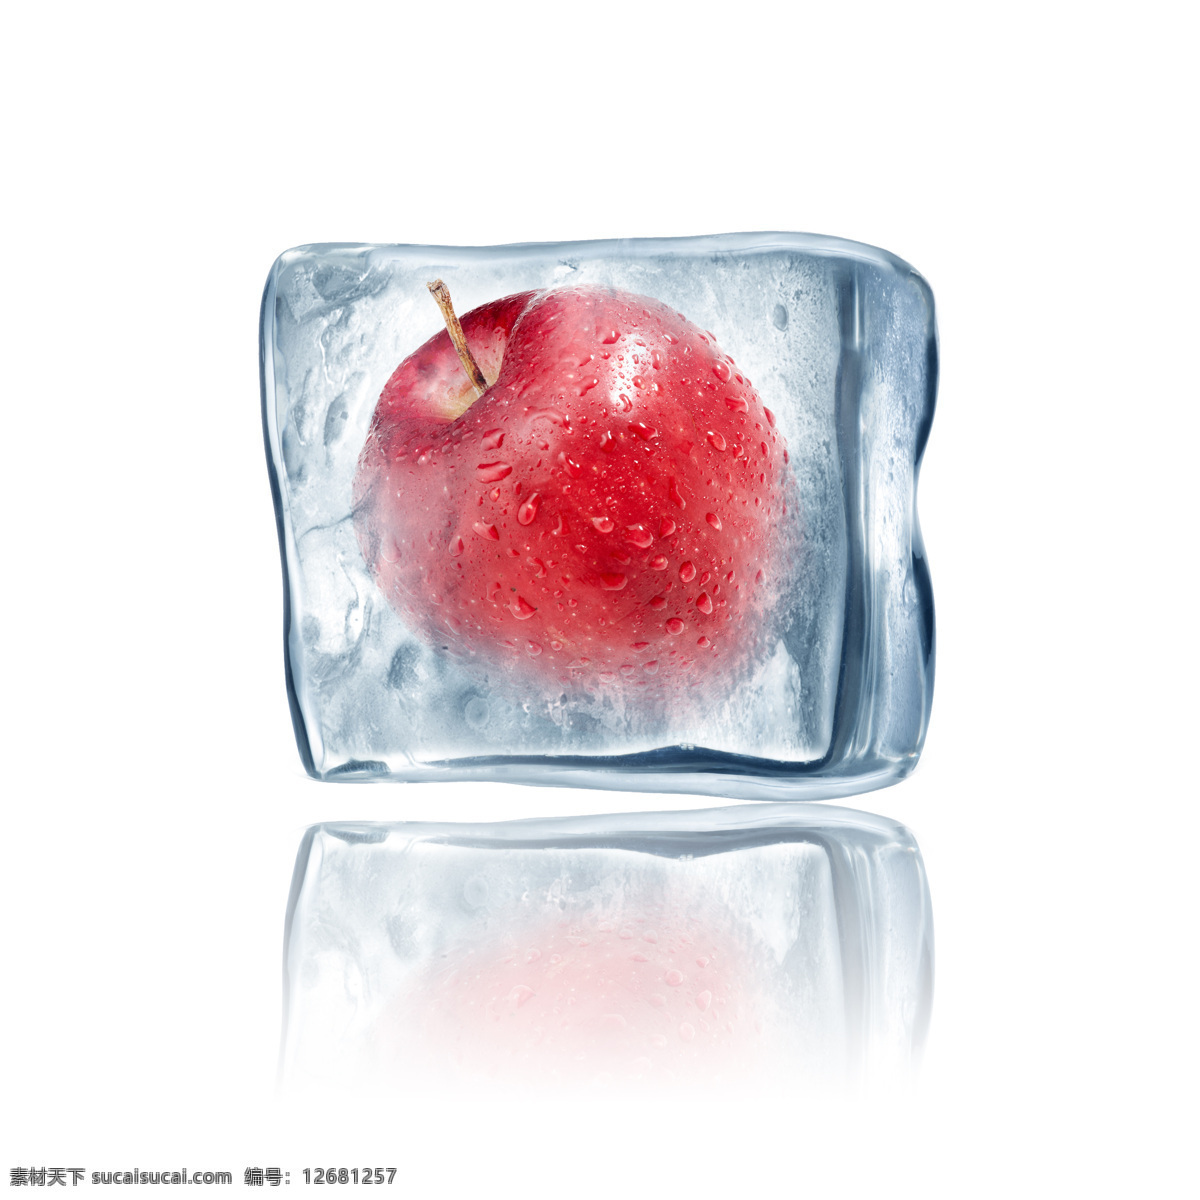 冰块 苹果 生物世界 水滴 水果 水珠 新鲜水果 冰 设计素材 模板下载 冰苹果 结冰 美味水果 psd源文件